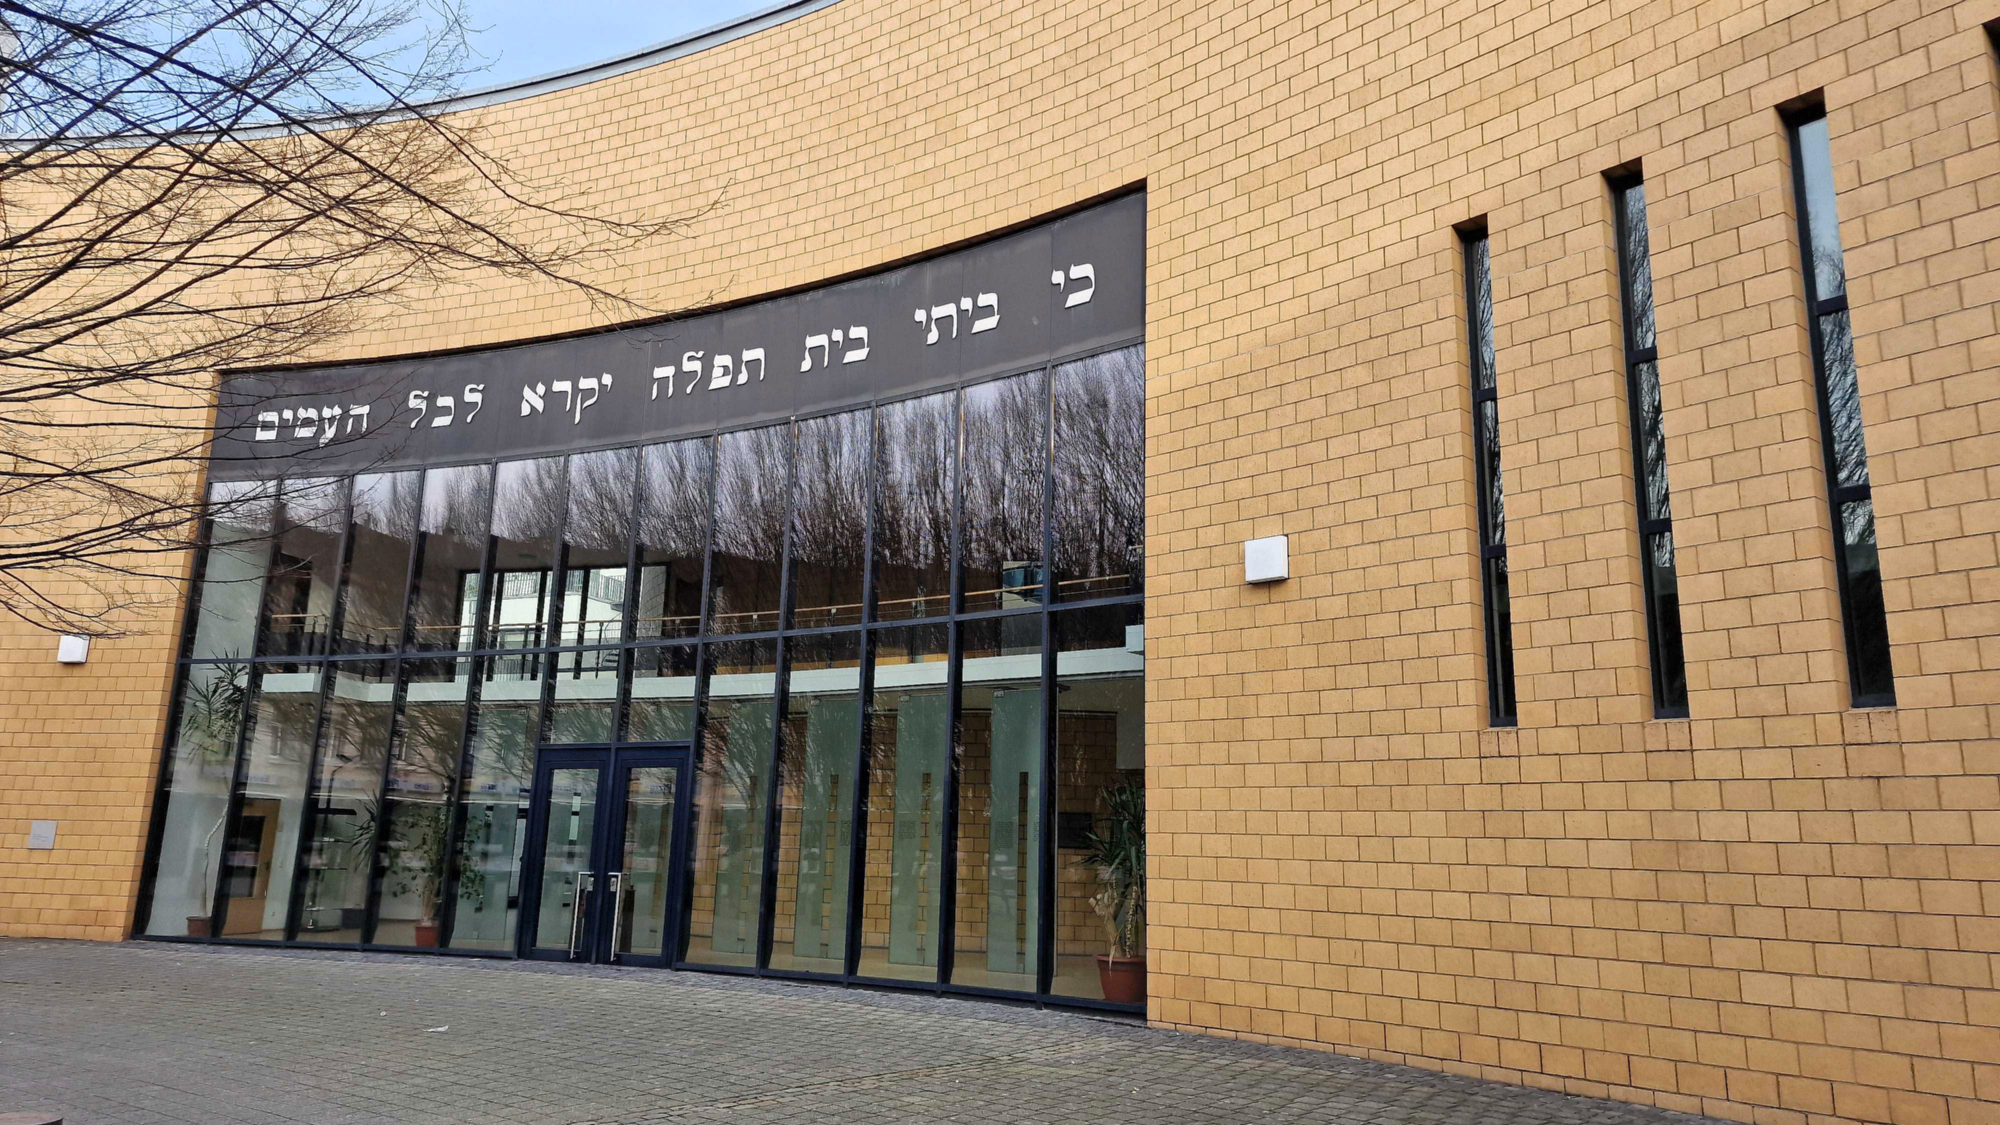 Ansprache in der Synagoge in Aachen